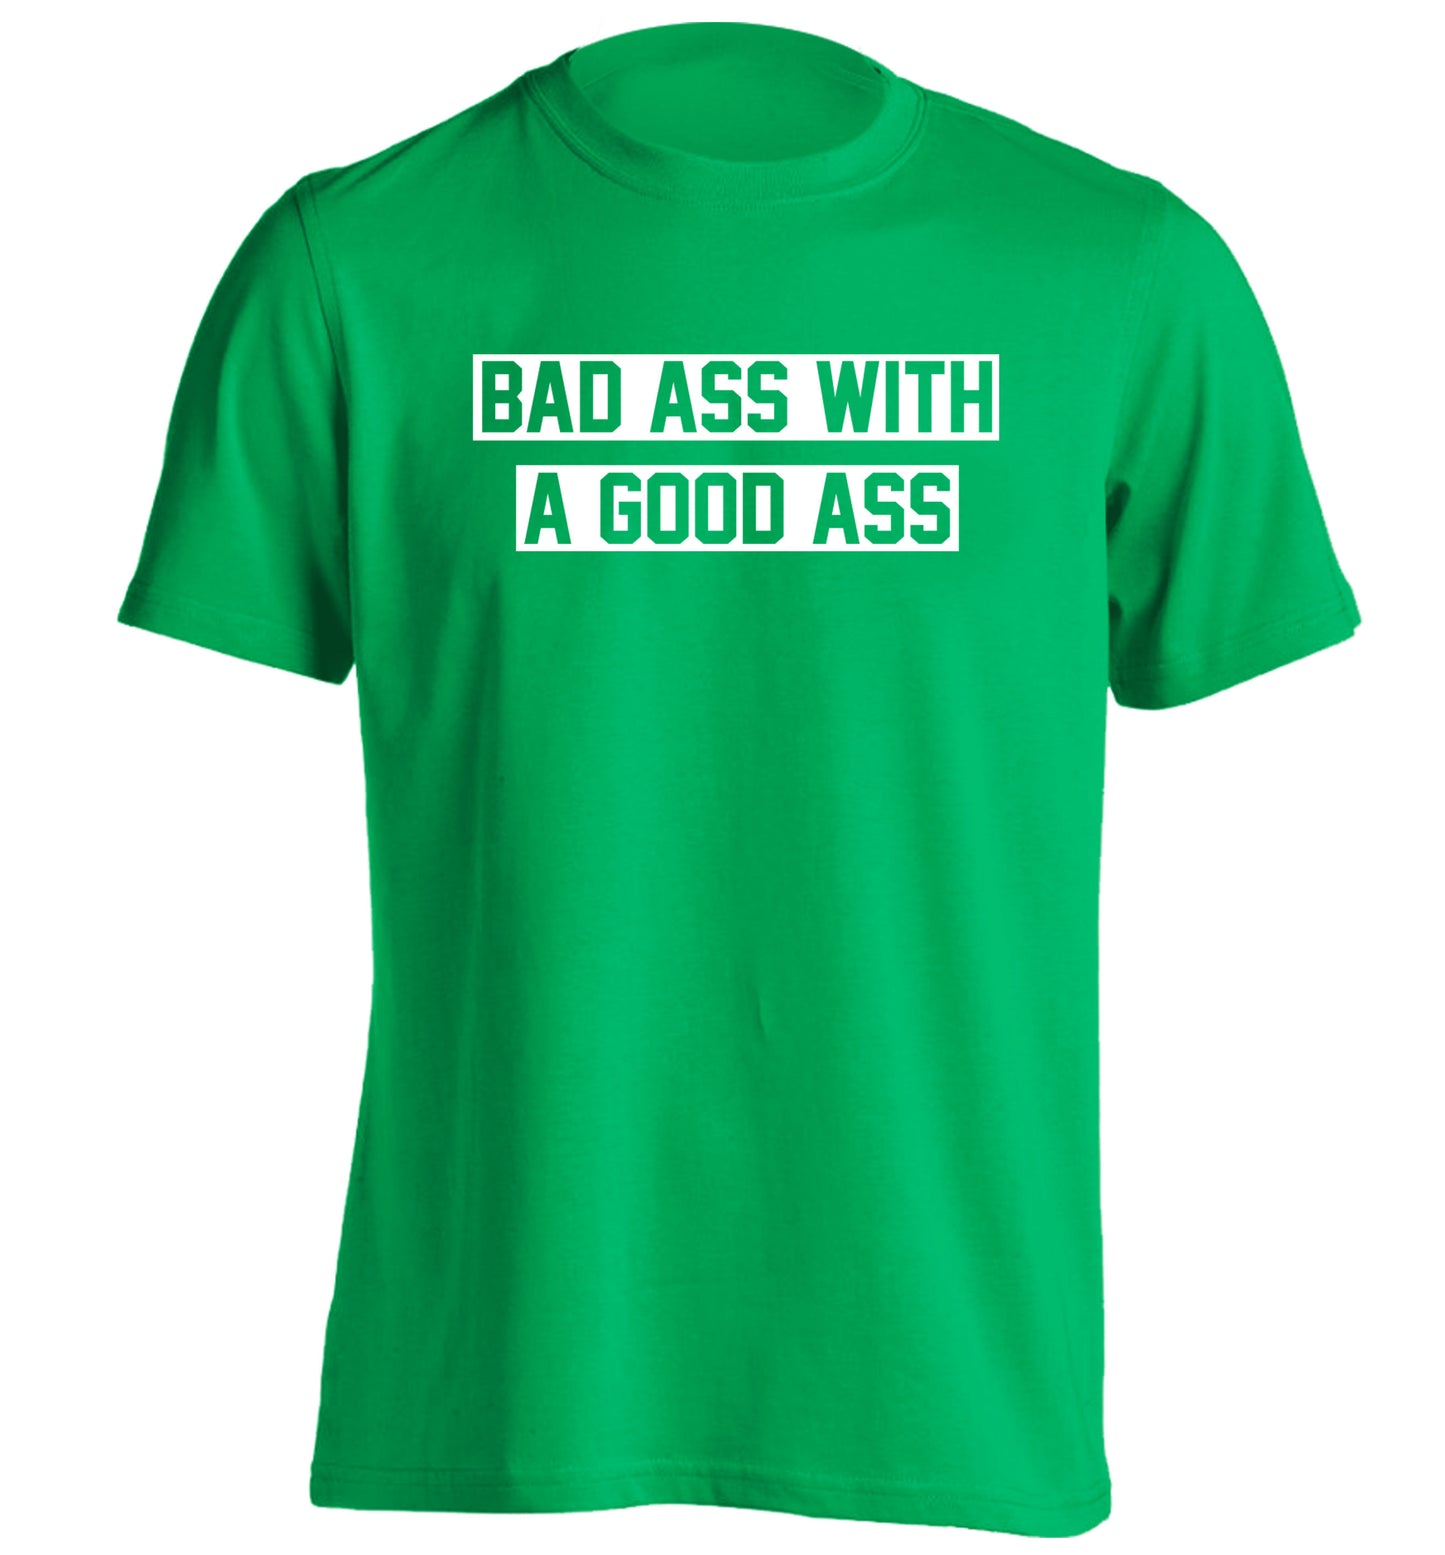 A bad ass with a good ass adults unisex green Tshirt 2XL